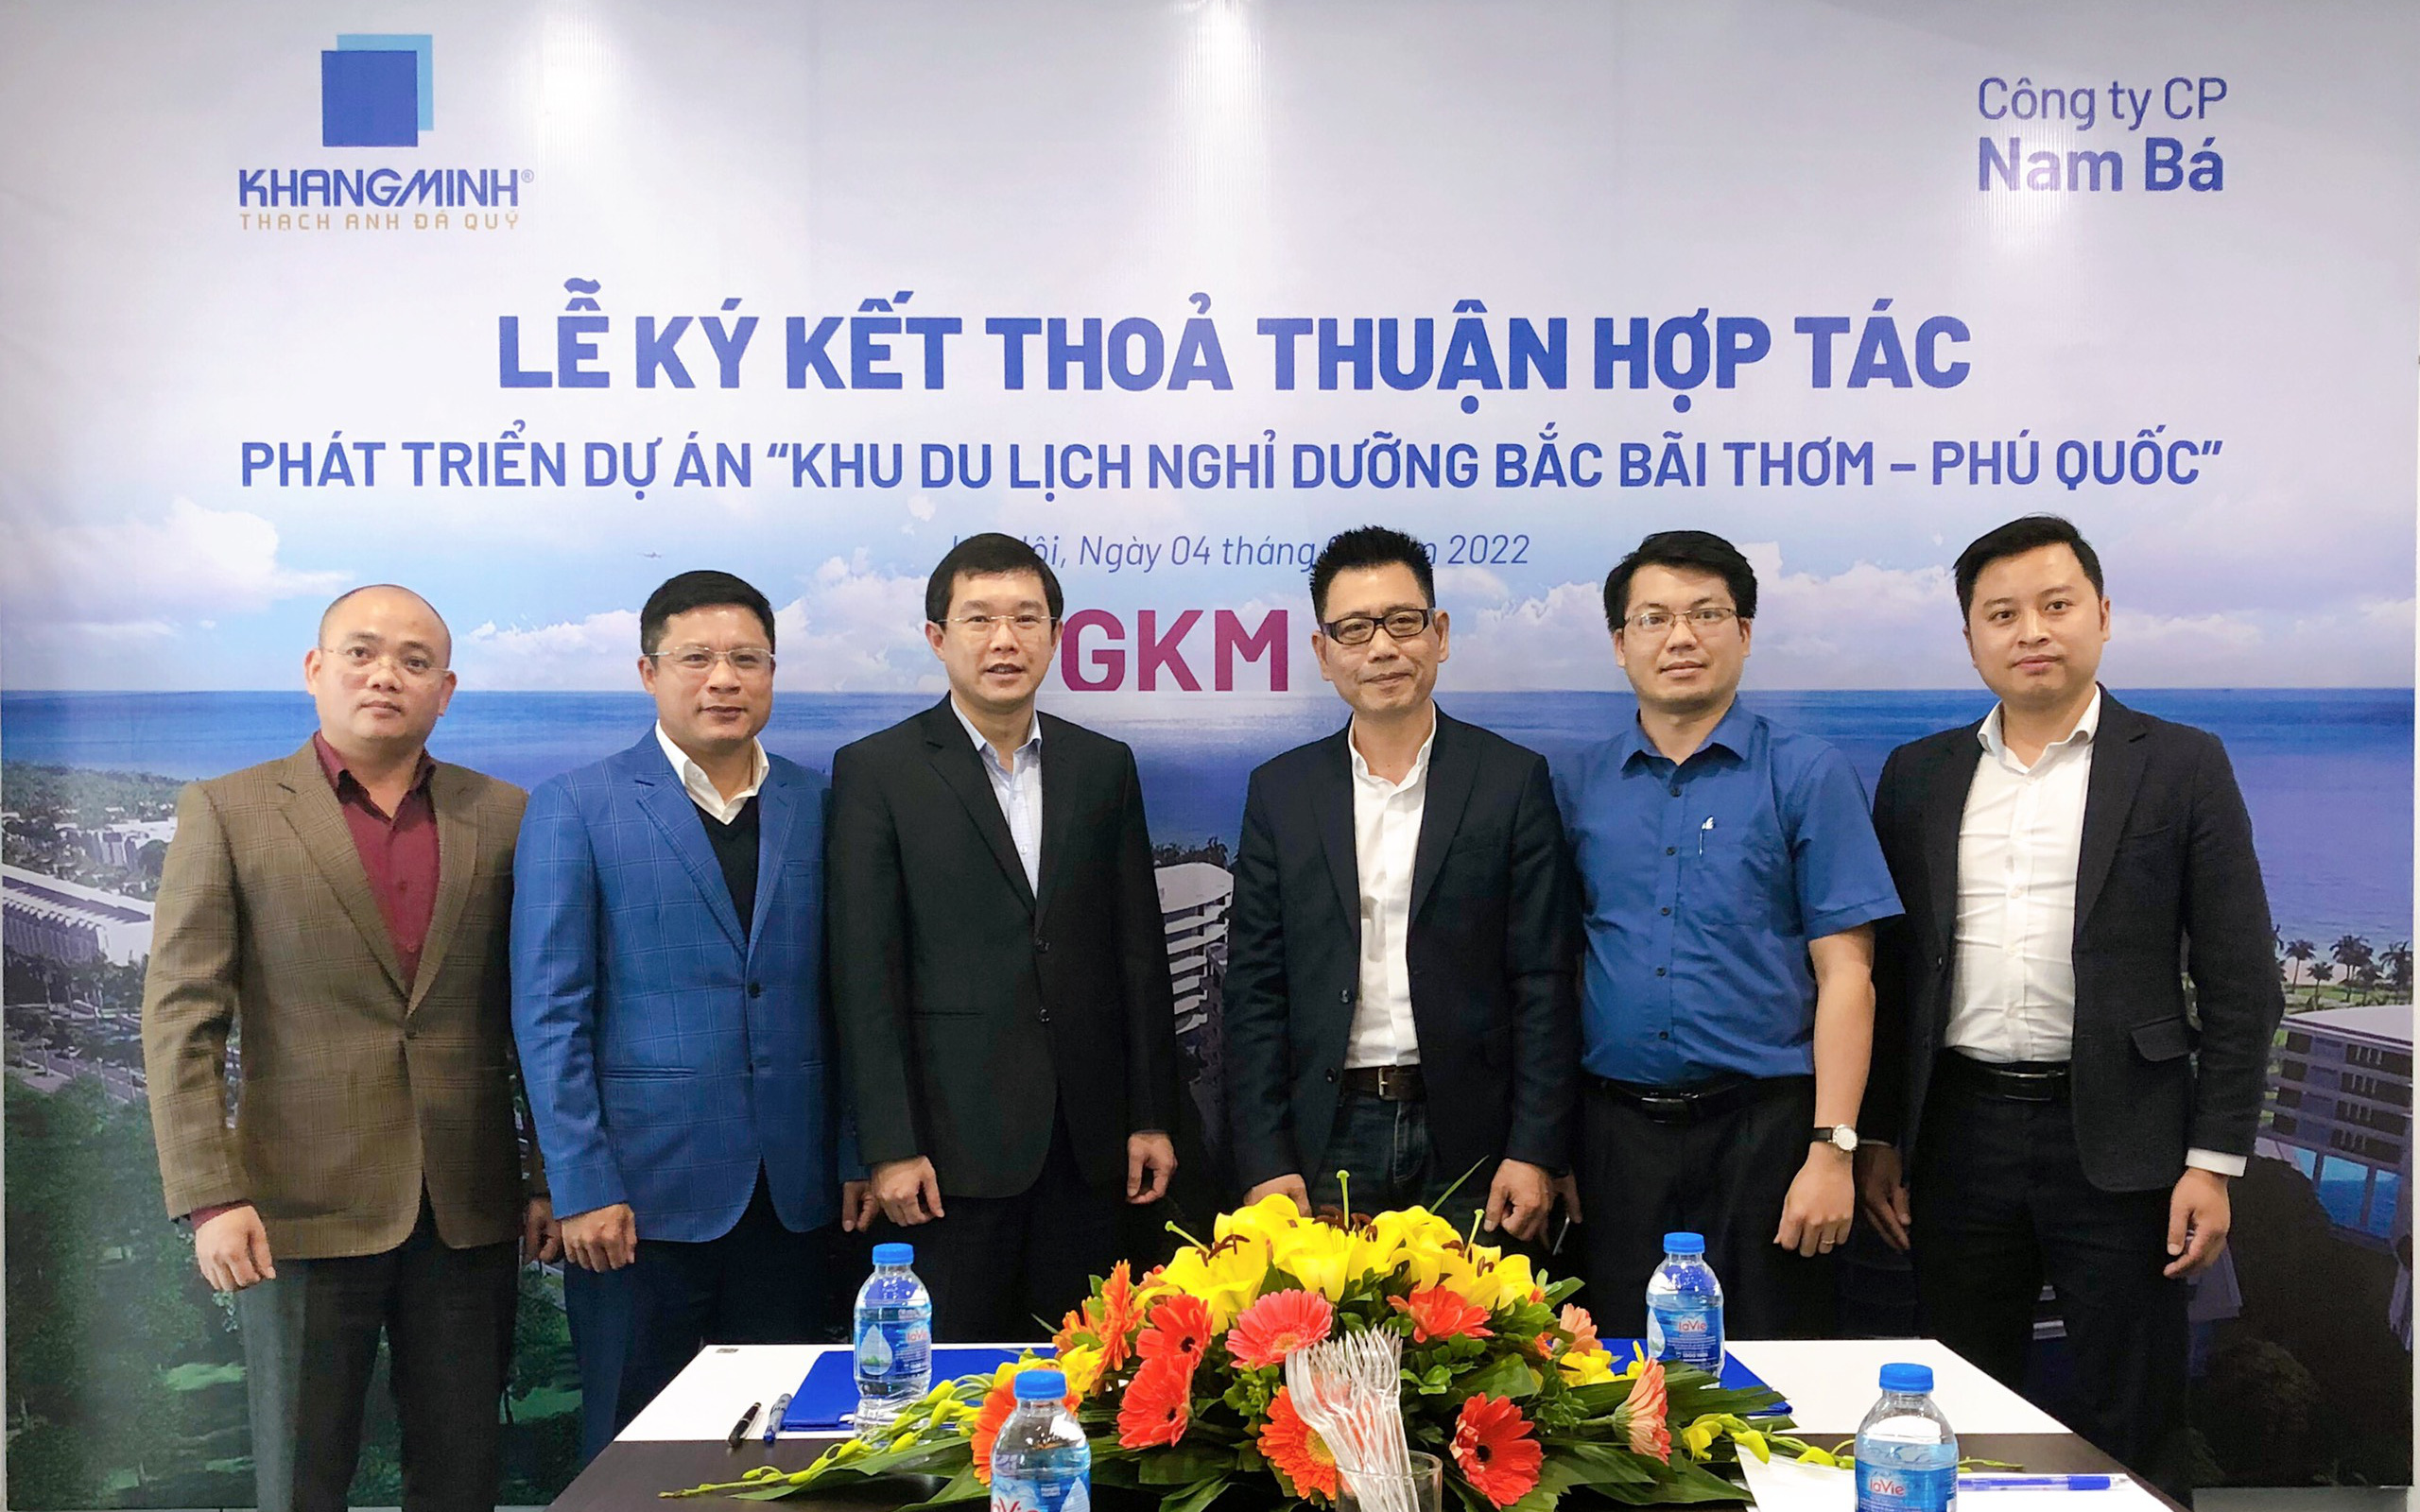 Khang Minh Group (GKM) “tham chiến” thị trường bất động sản nghỉ dưỡng tại Phú Quốc